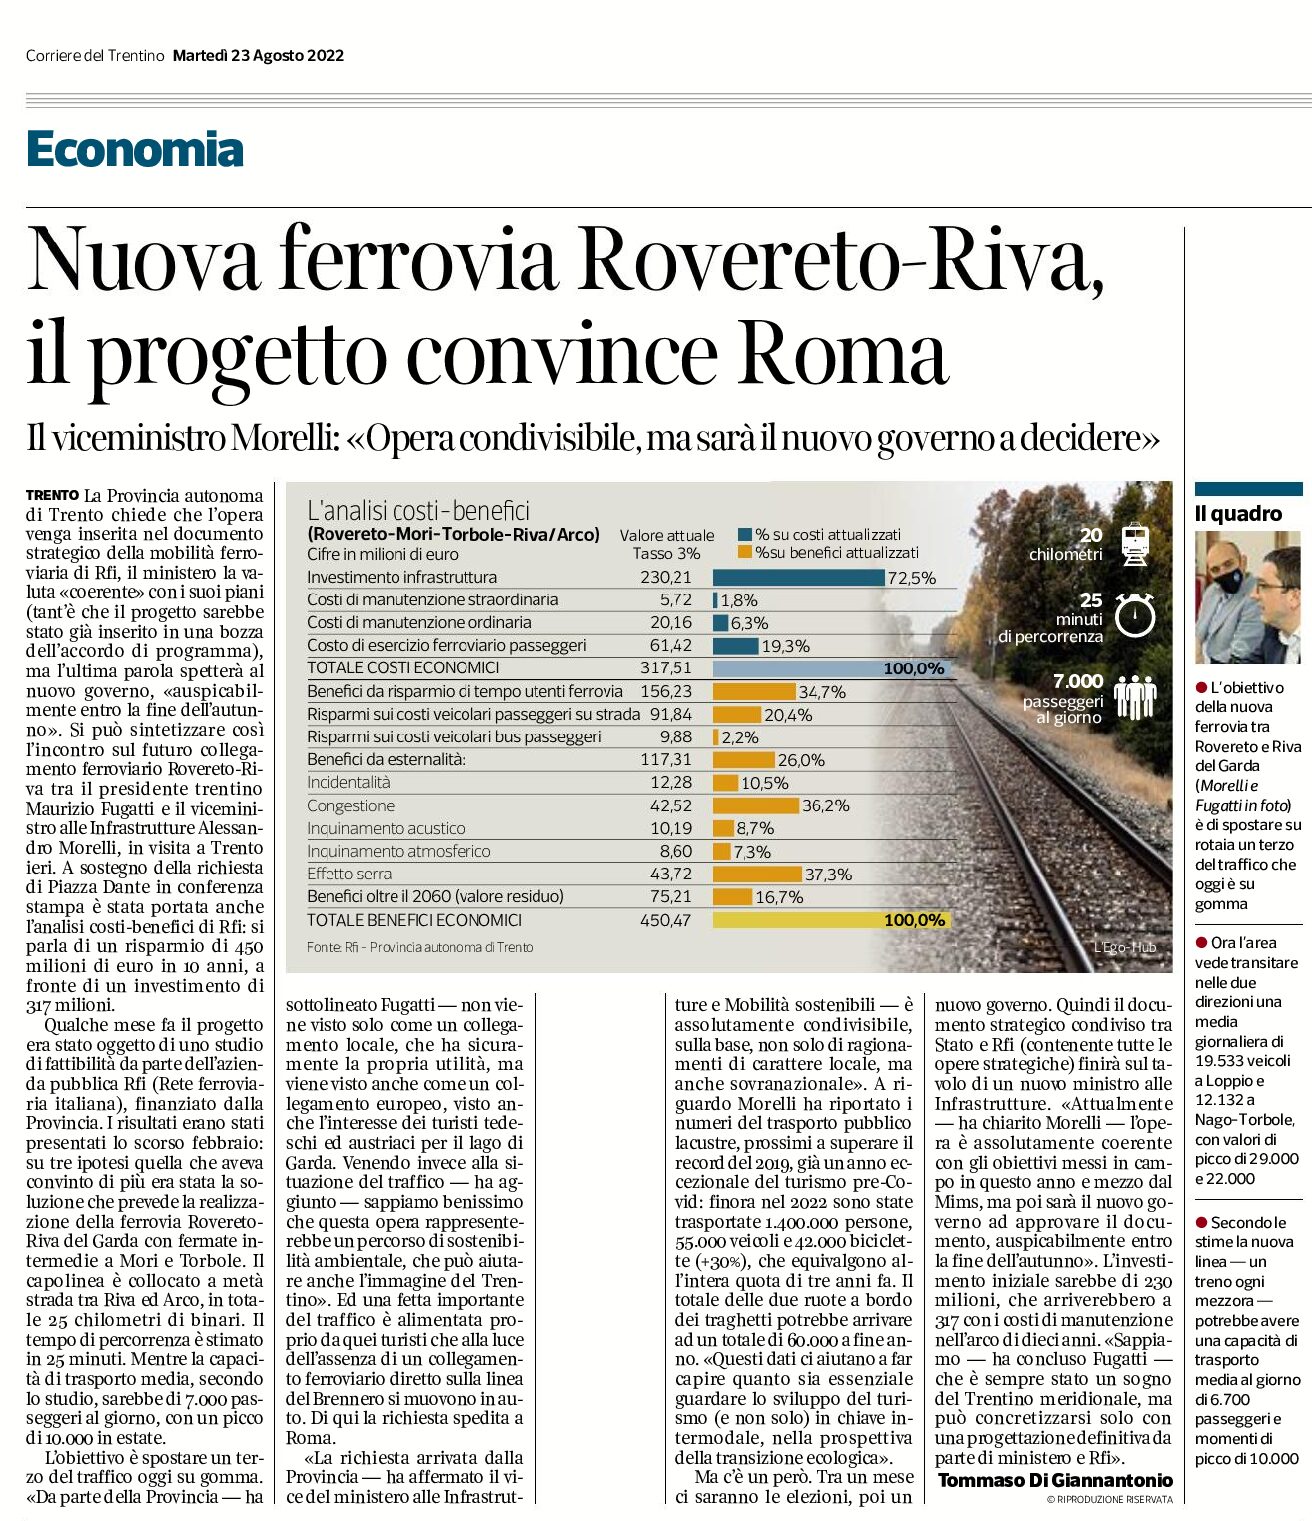 Nuova ferrovia Rovereto-Riva: il progetto convince Roma